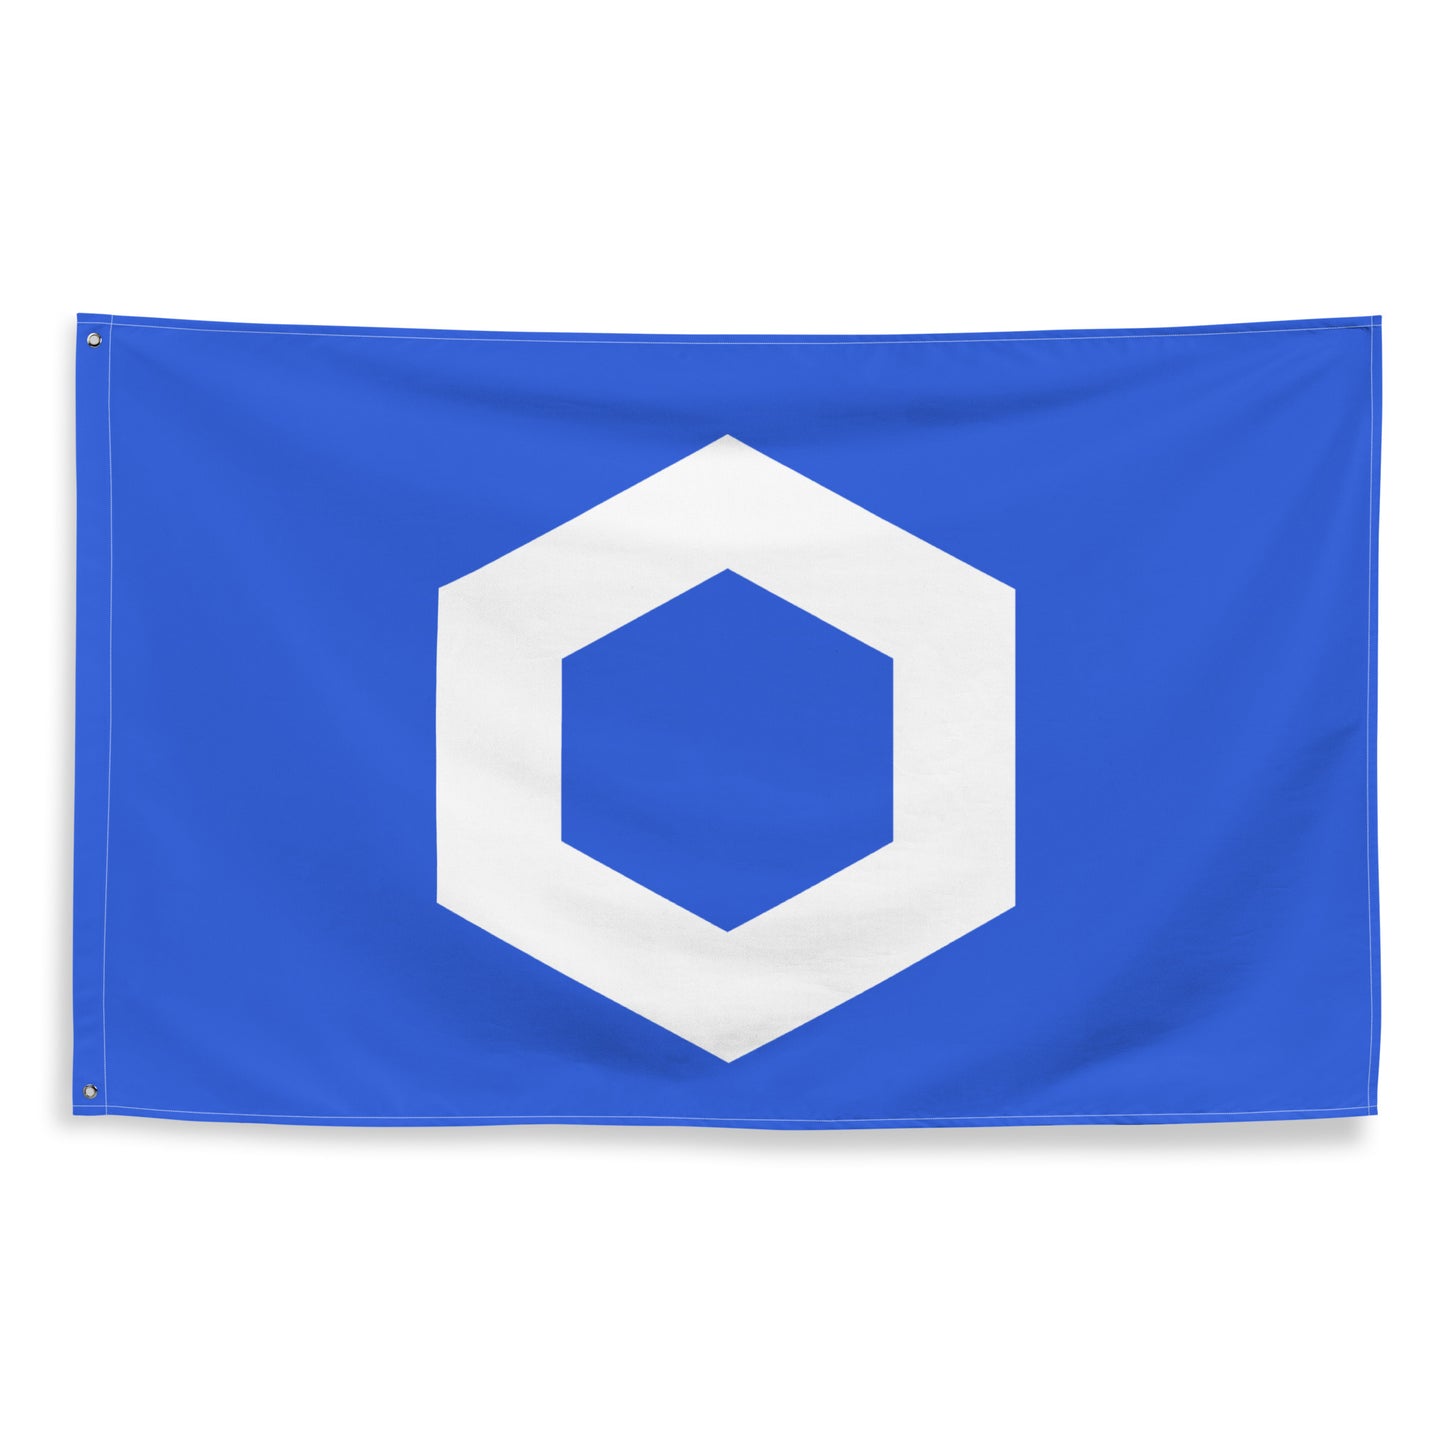 CHAINLINK (LINK) LOGO FLAG (V1)